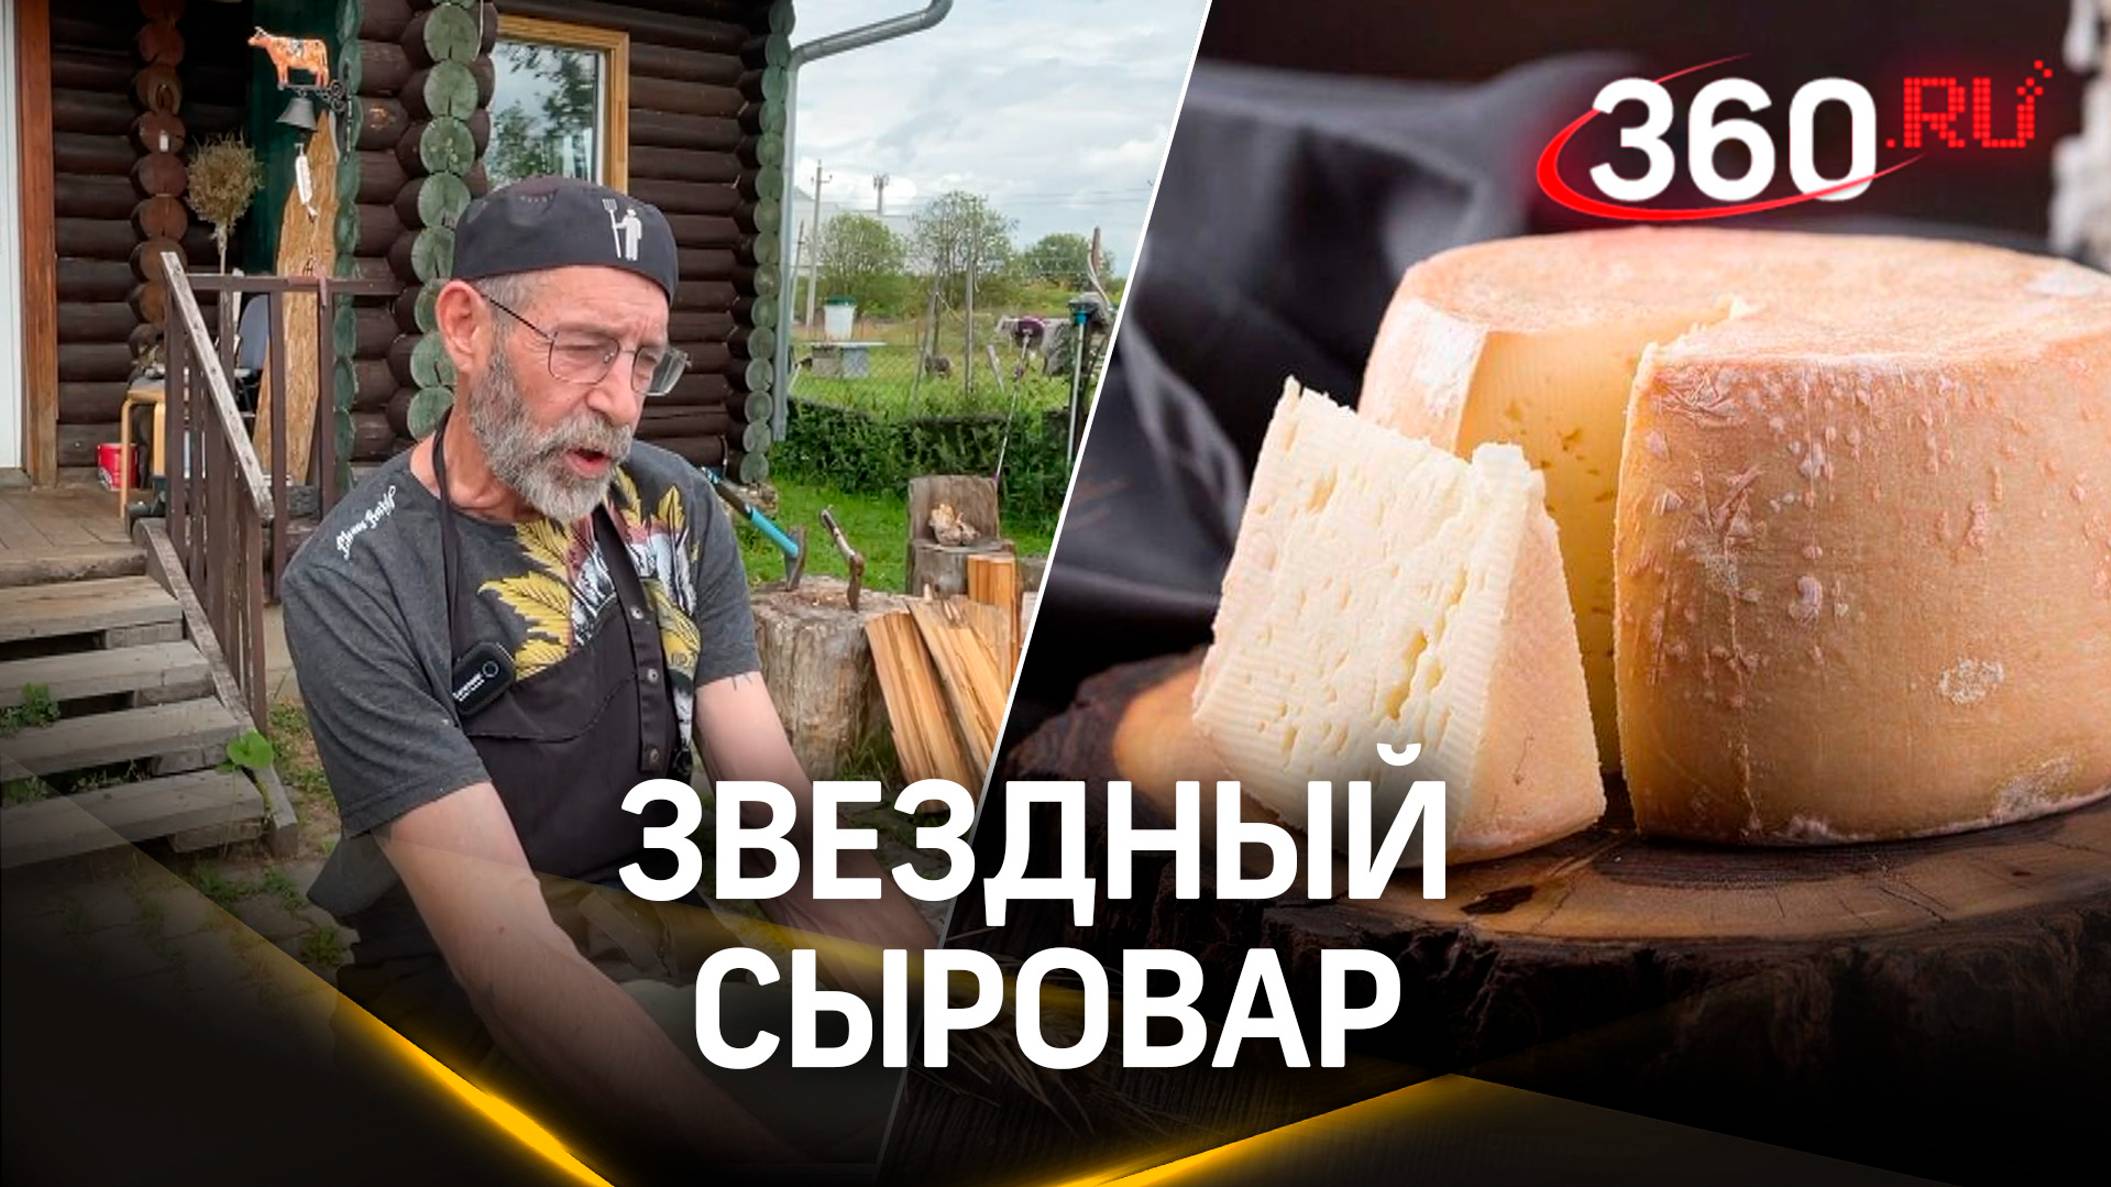 Американский повар, который кормил Мика Джагера, теперь делает сыр в Подмосковье